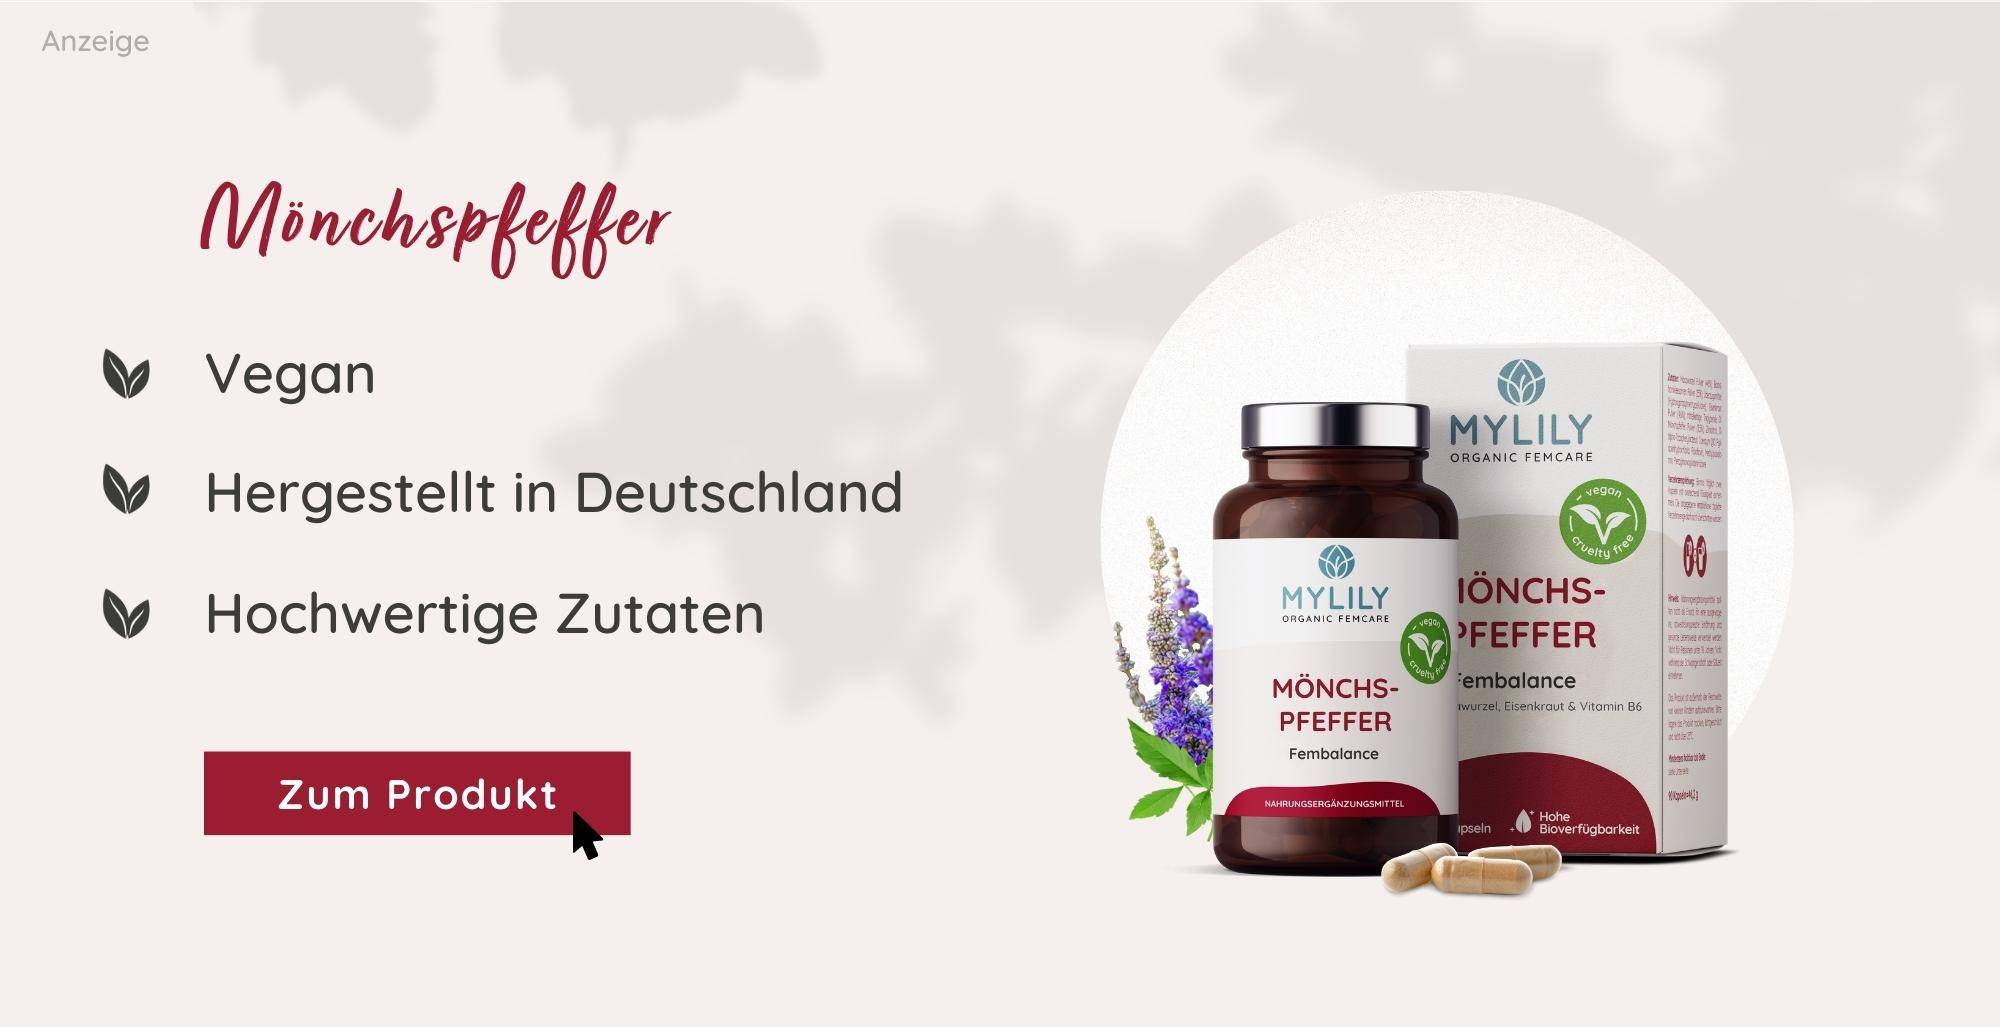 Mönchspfeffer Nahrungsergänzung für einen regelmäßigen Zyklus | MYLILY organic femcare | vegan & bio | hergestellt in Deutschland 